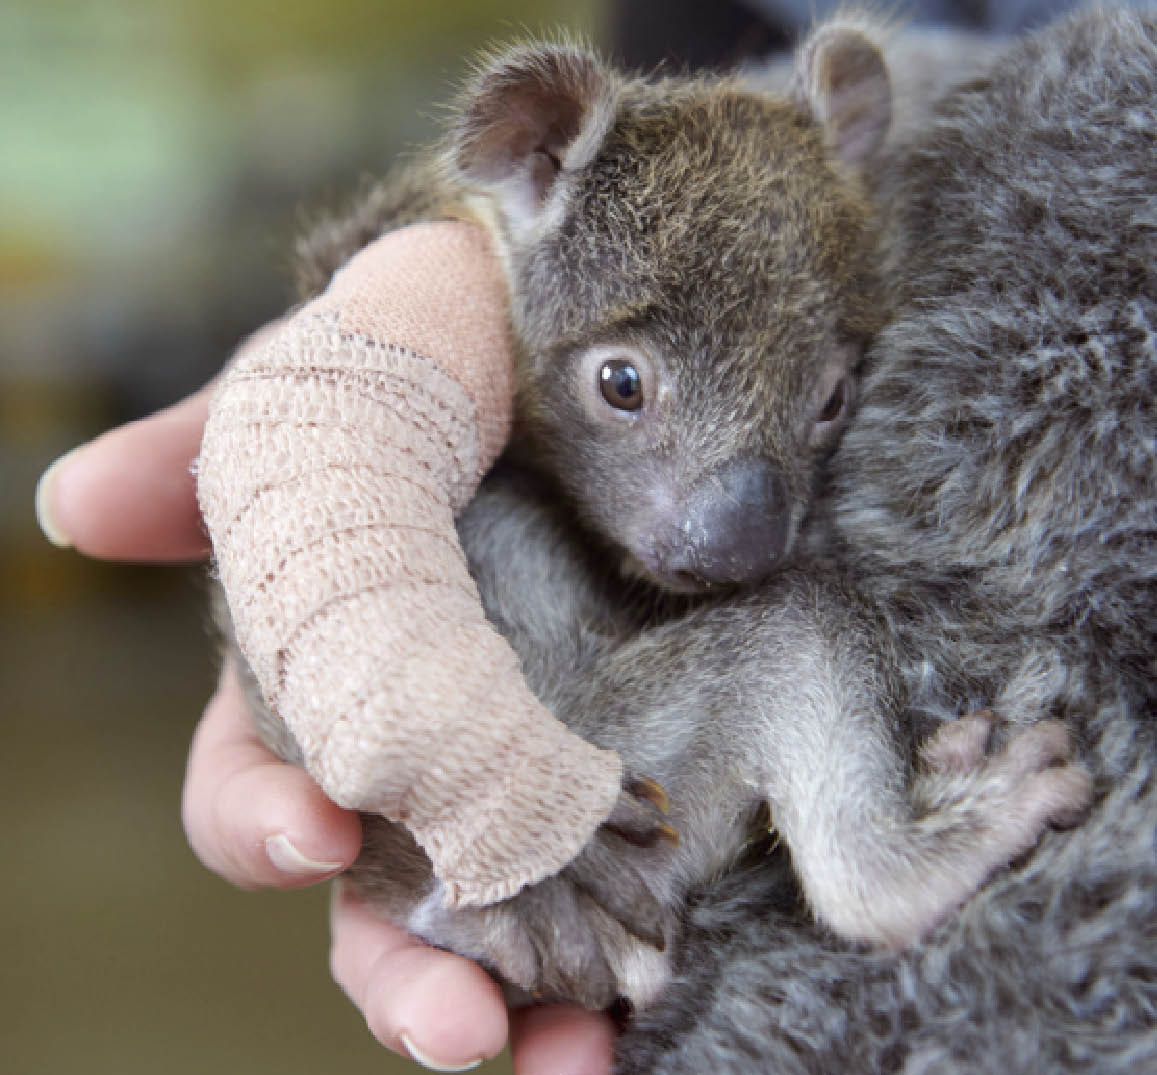 En Australie Un Bebe Koala Sauvage Tombe D Un Arbre A Ete Sauve Playbac Presse Digital Journaux Jeunesse Le Petit Quotidien Mon Quotidien L Actu L Eco Et Plus